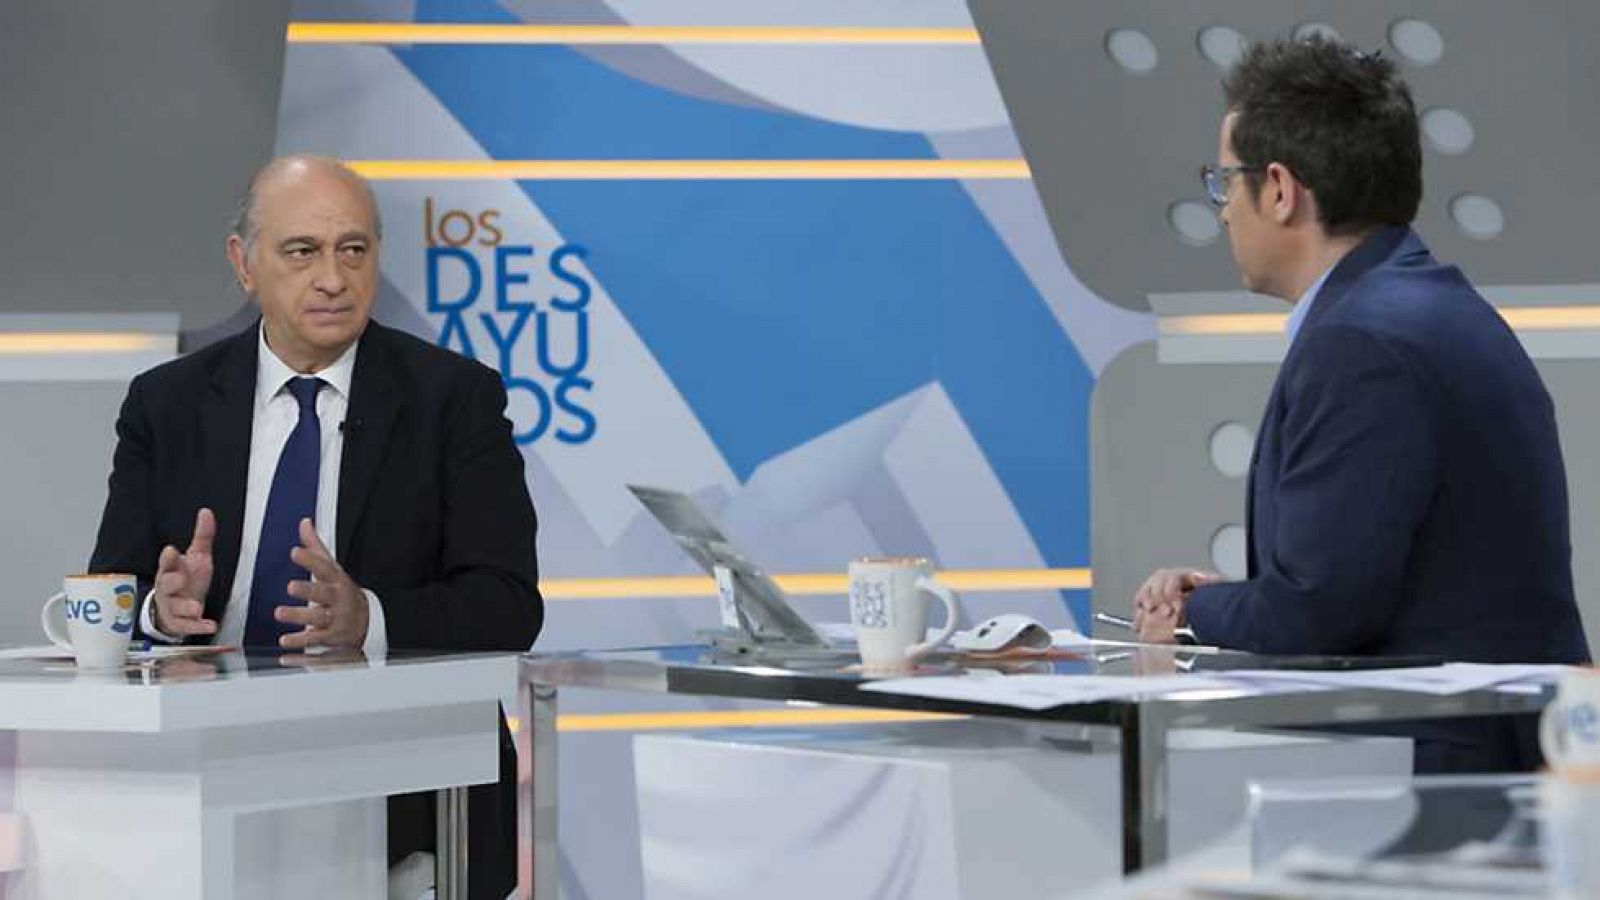 Los desayunos de TVE - Jorge Fernández Díaz, Jorge Fernández Díaz